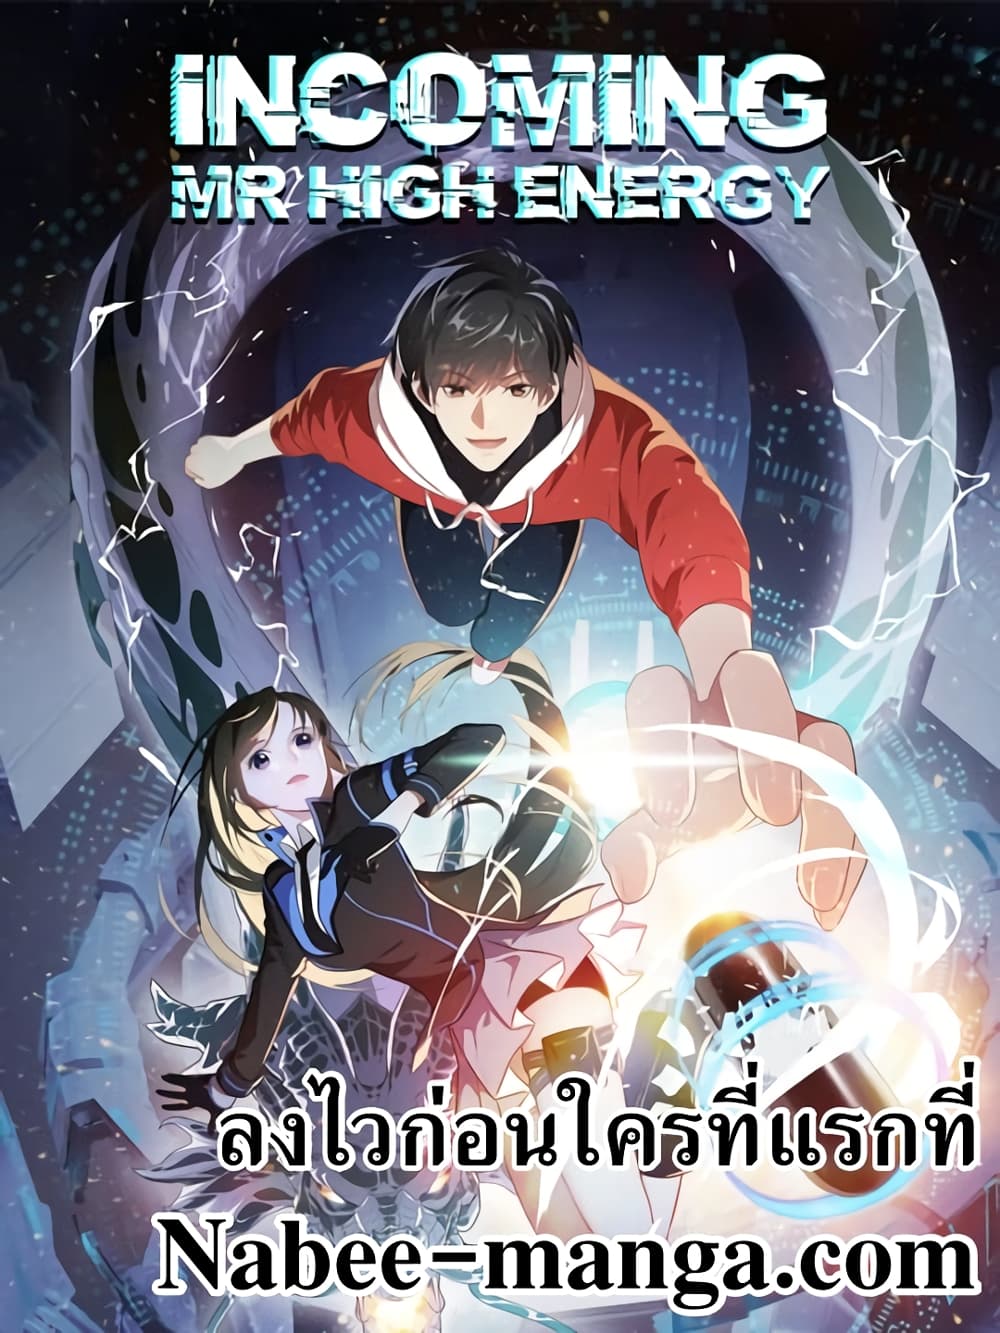 High Energy Strikes 110 (1)